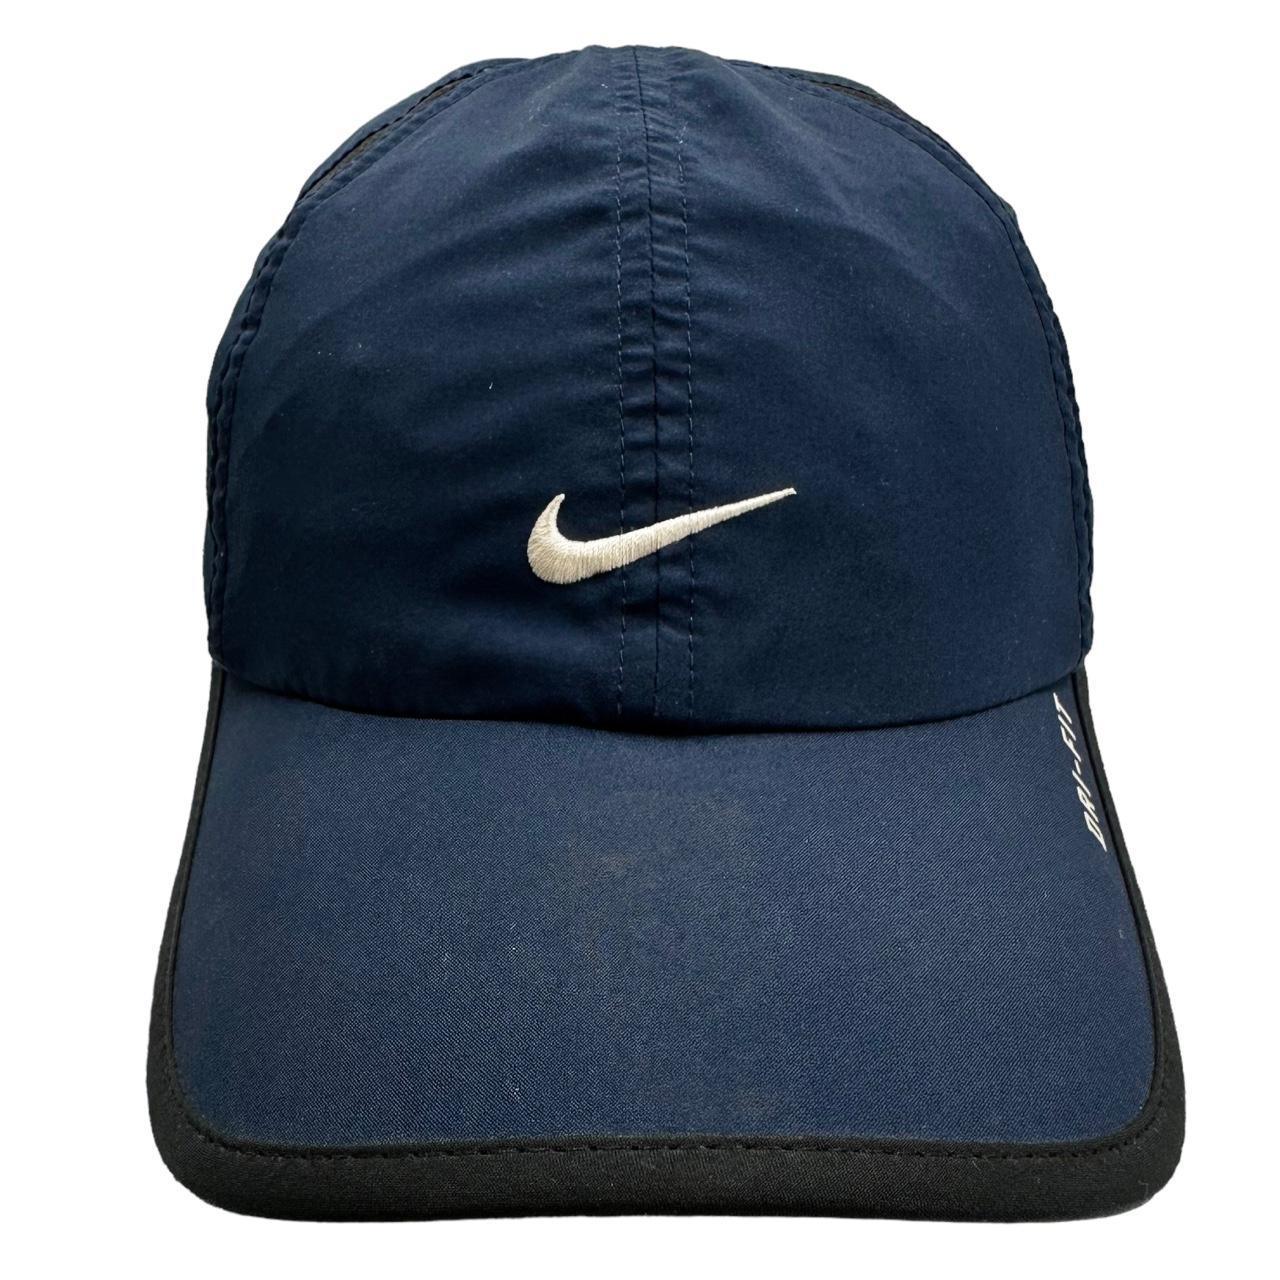 Vintage Nike Hat - Known Source